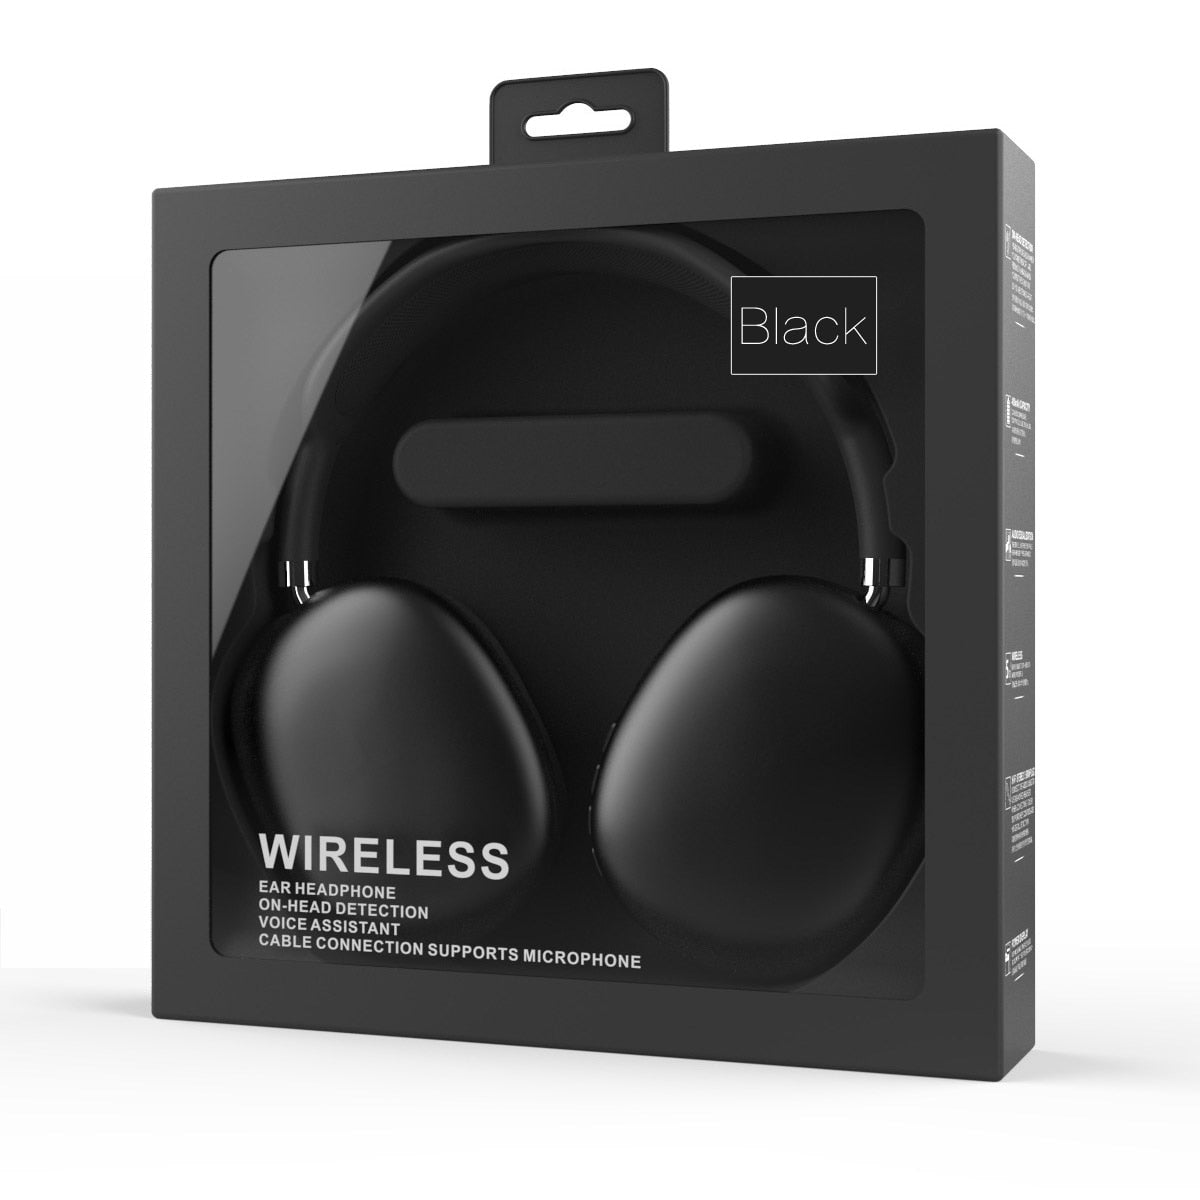 Wireless 2 in 1 Headphones